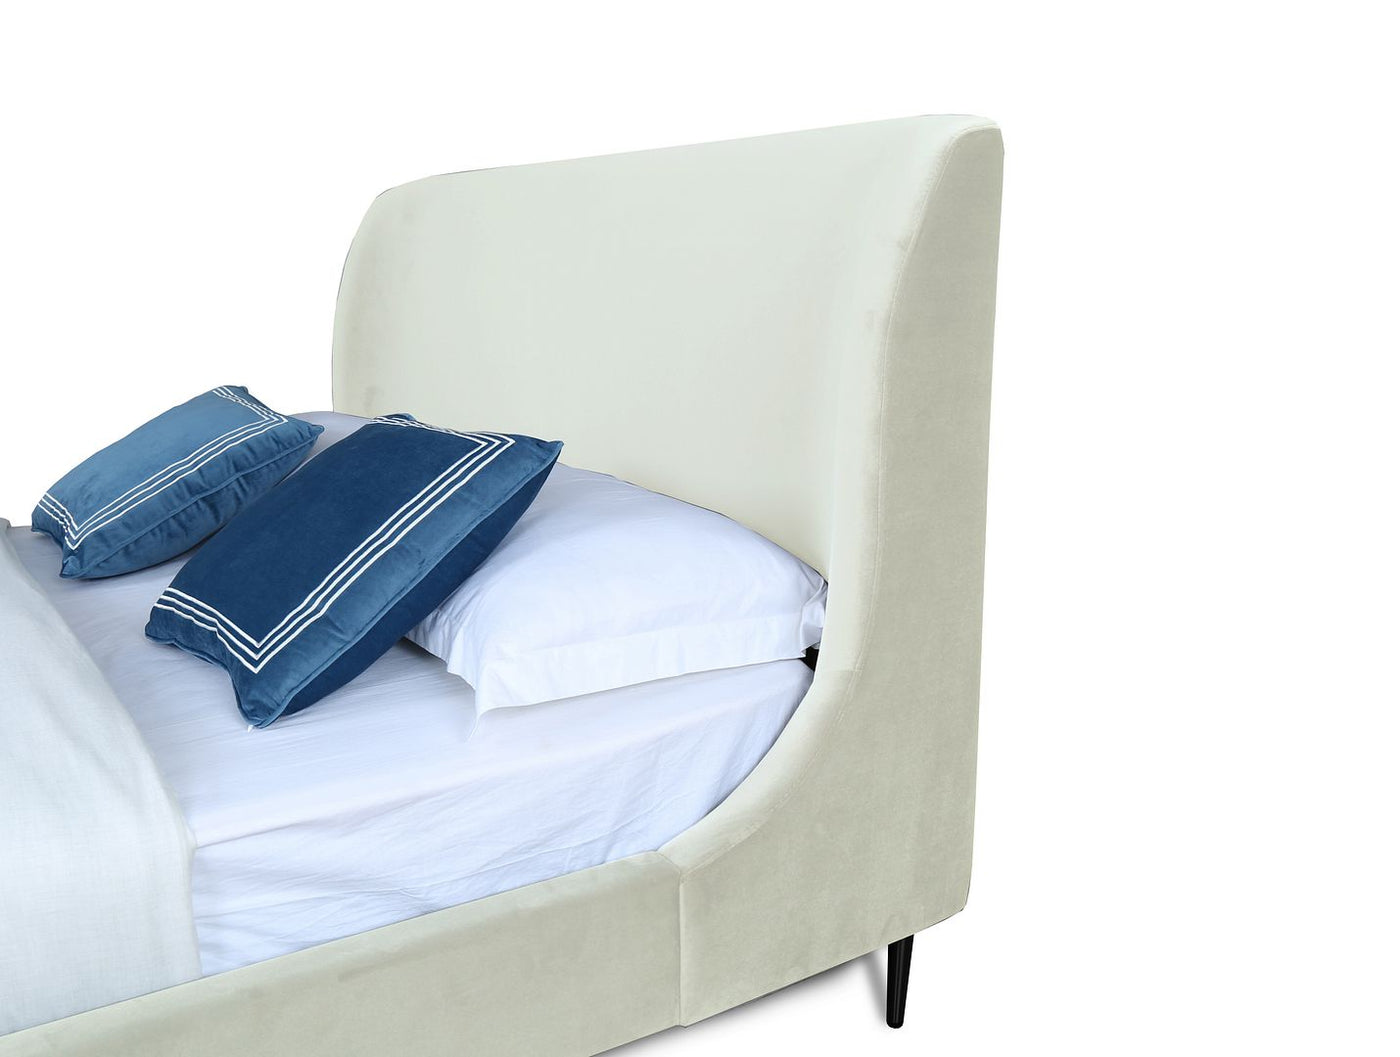 Stege Full-Size Bed - Cream/Black Legs